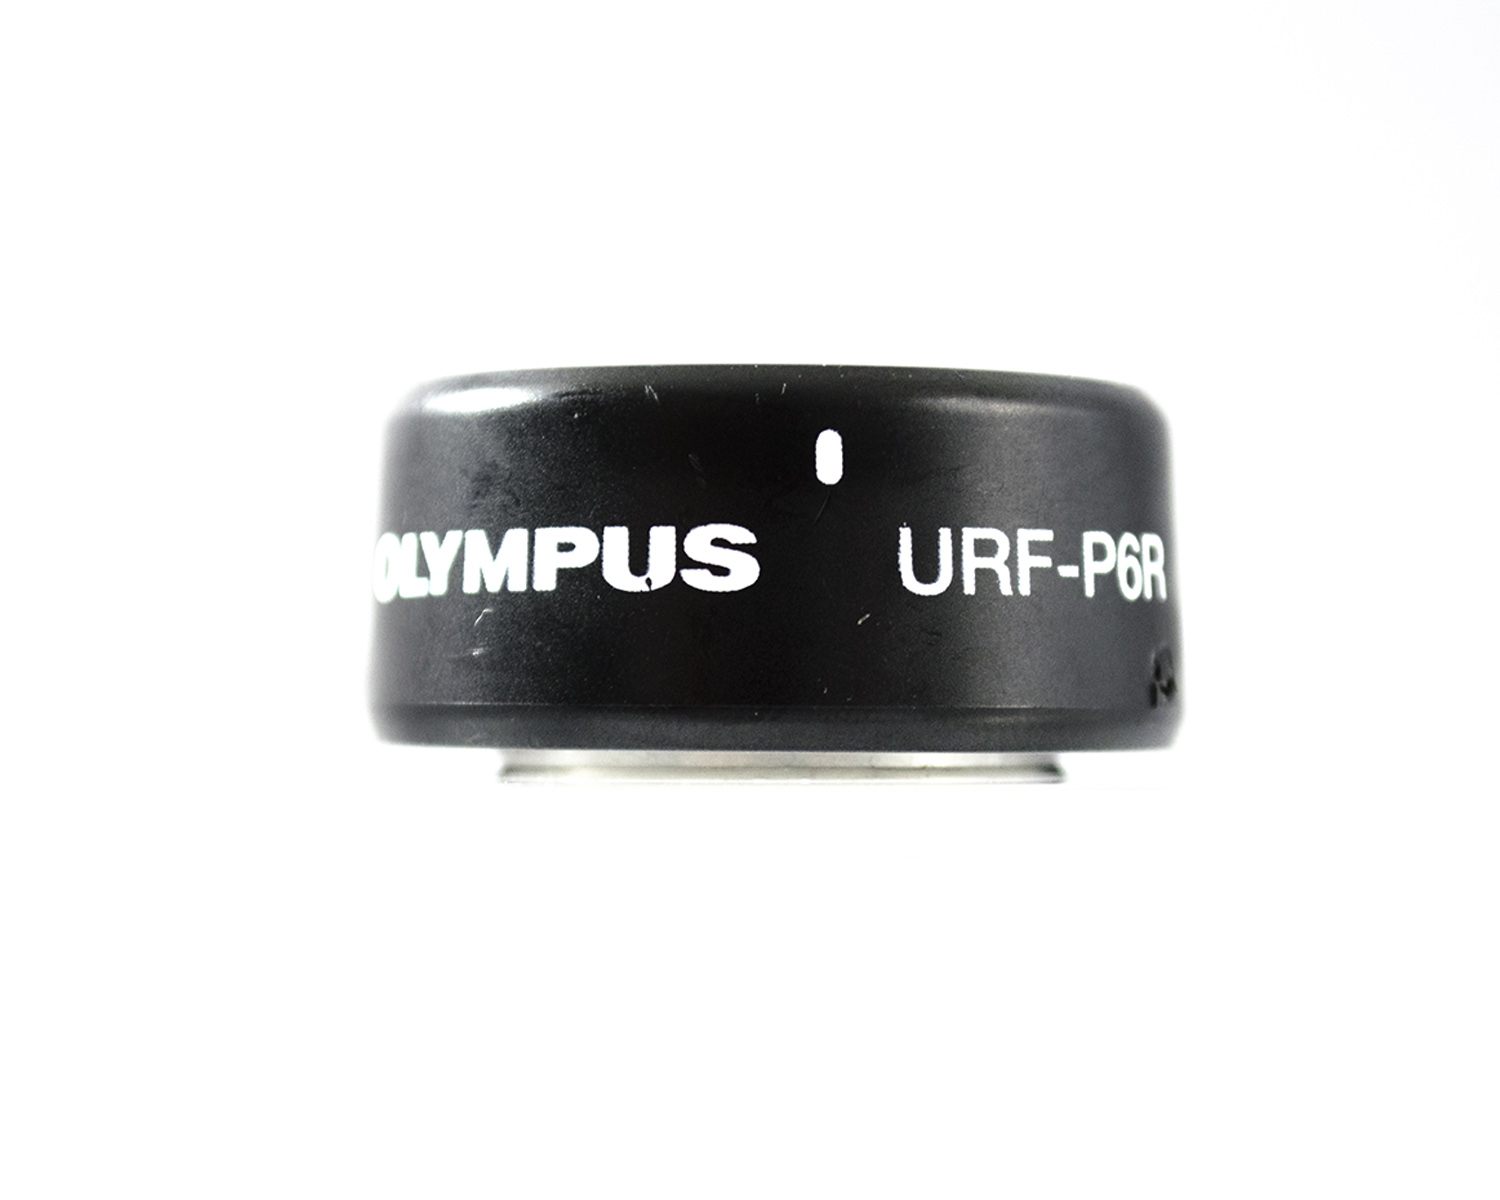 OEM Nameplate: Eyepiece - URF-P6R